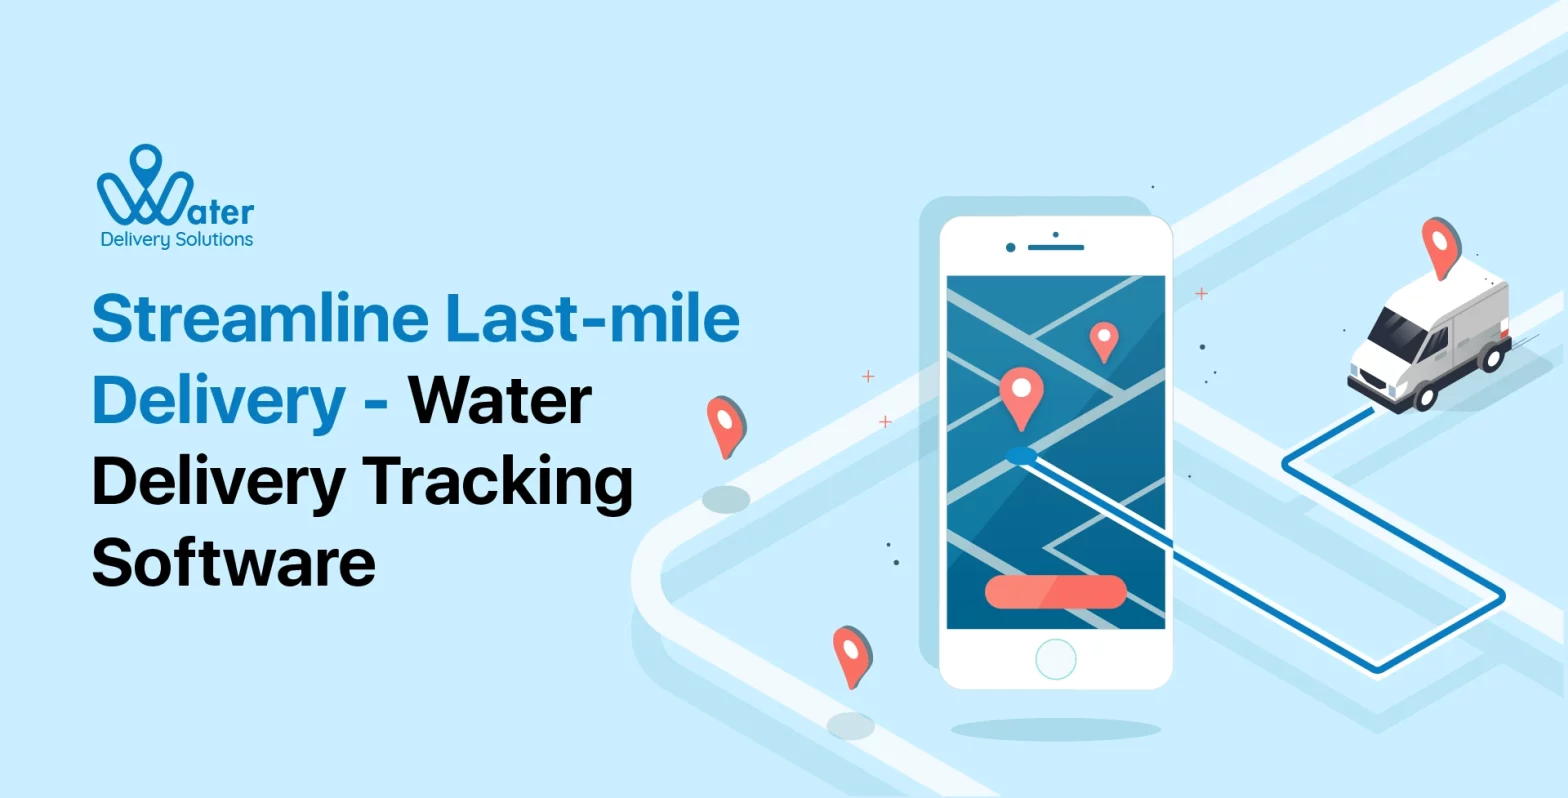 ravi garg, wds, streamline, last-mile delivery, water delivery tracking software, delivery tracking software, delivery software, last-mile delivery tracking software